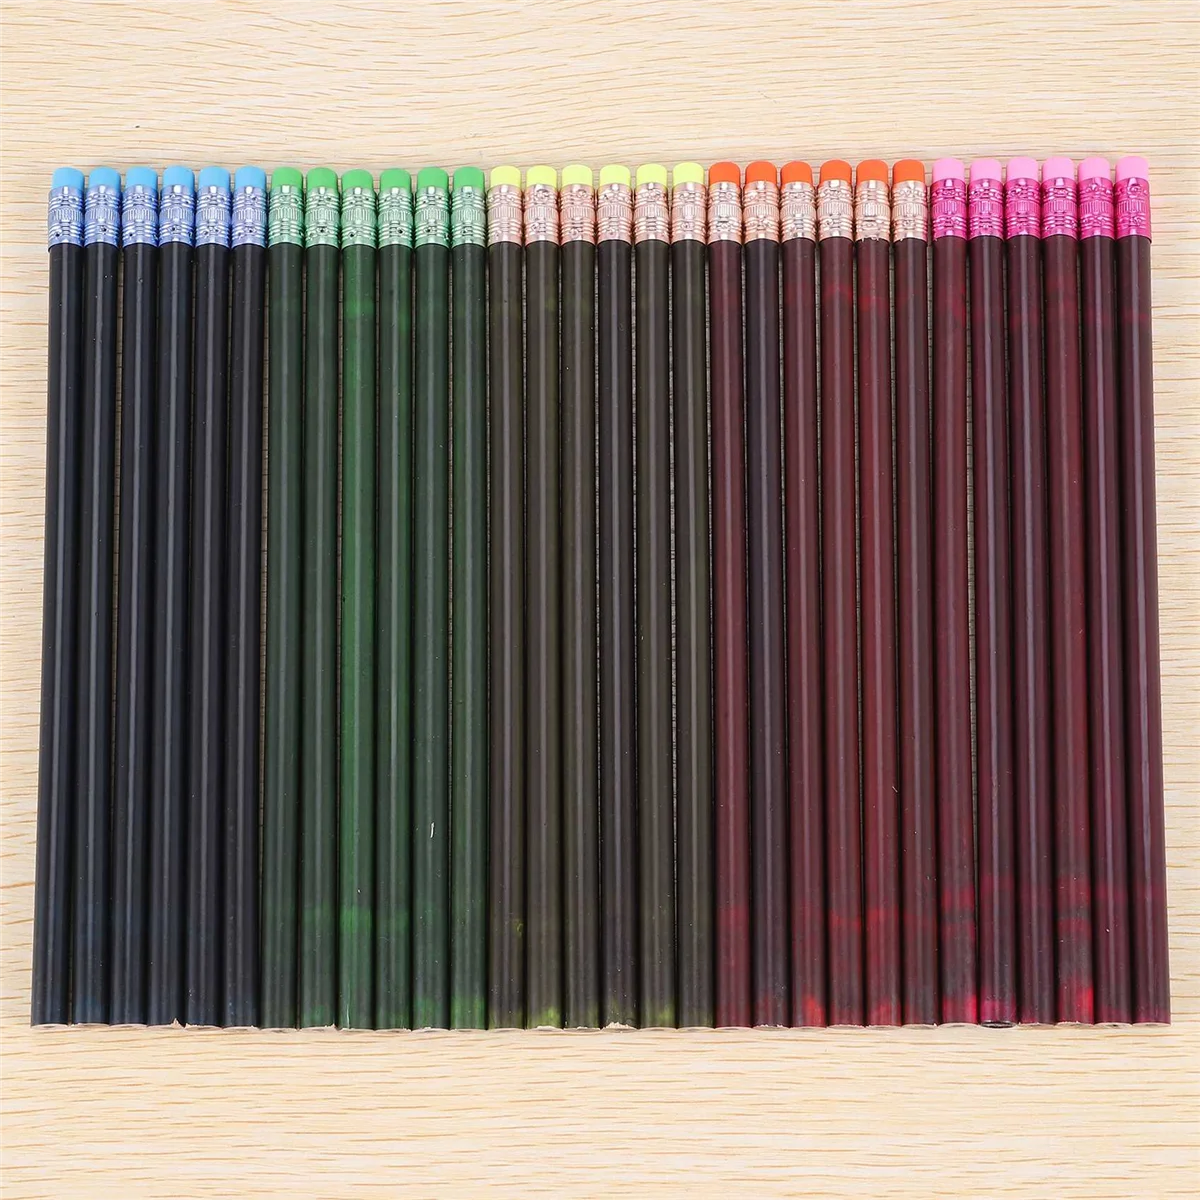 

Карандаш для смены цвета, карандаш для детей HB, меняющий цвет, термохромные карандаши с ластиком (30 шт.)